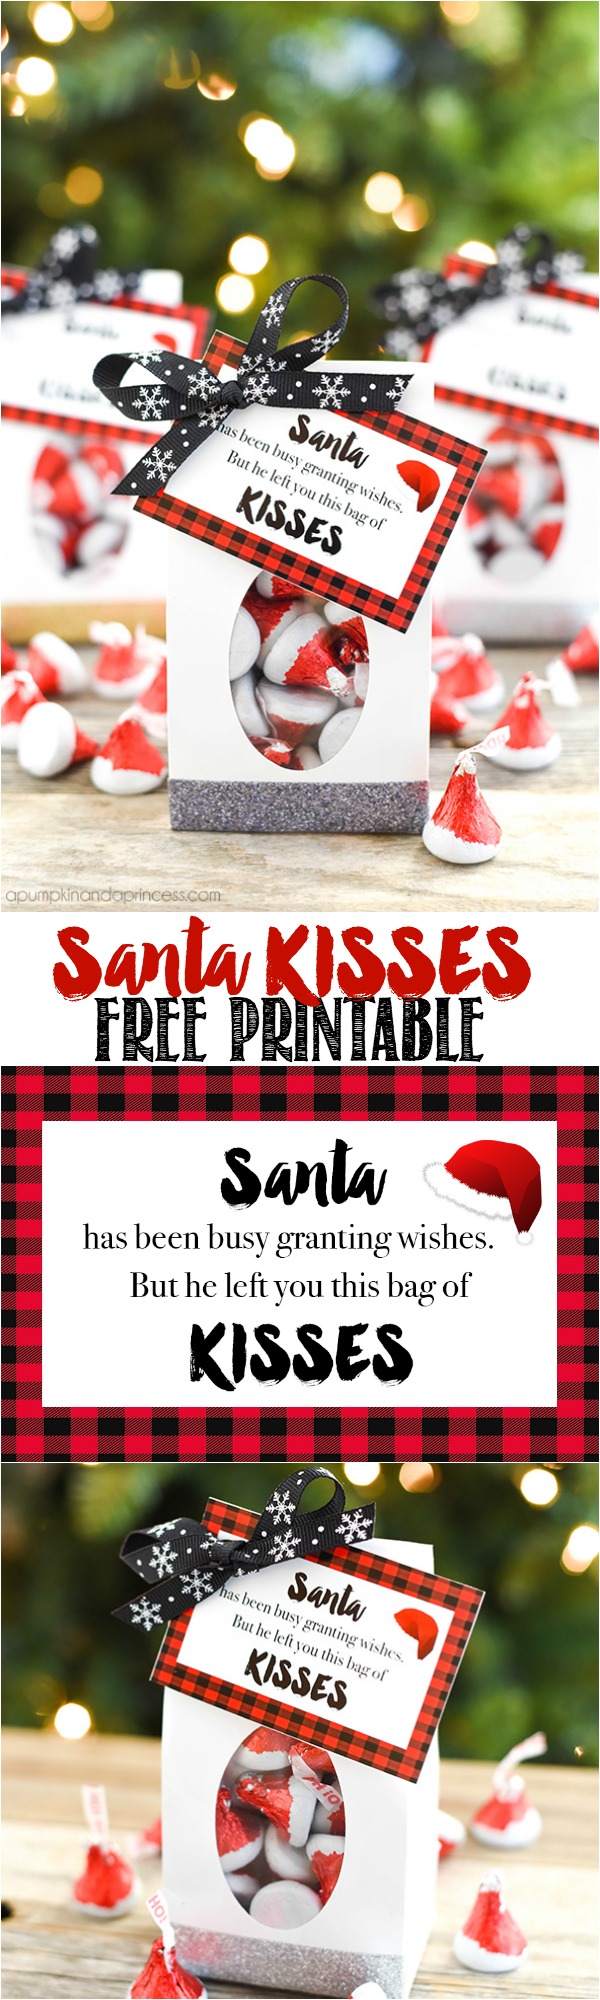 Santa-KISSES-Printable-Treat-Bags